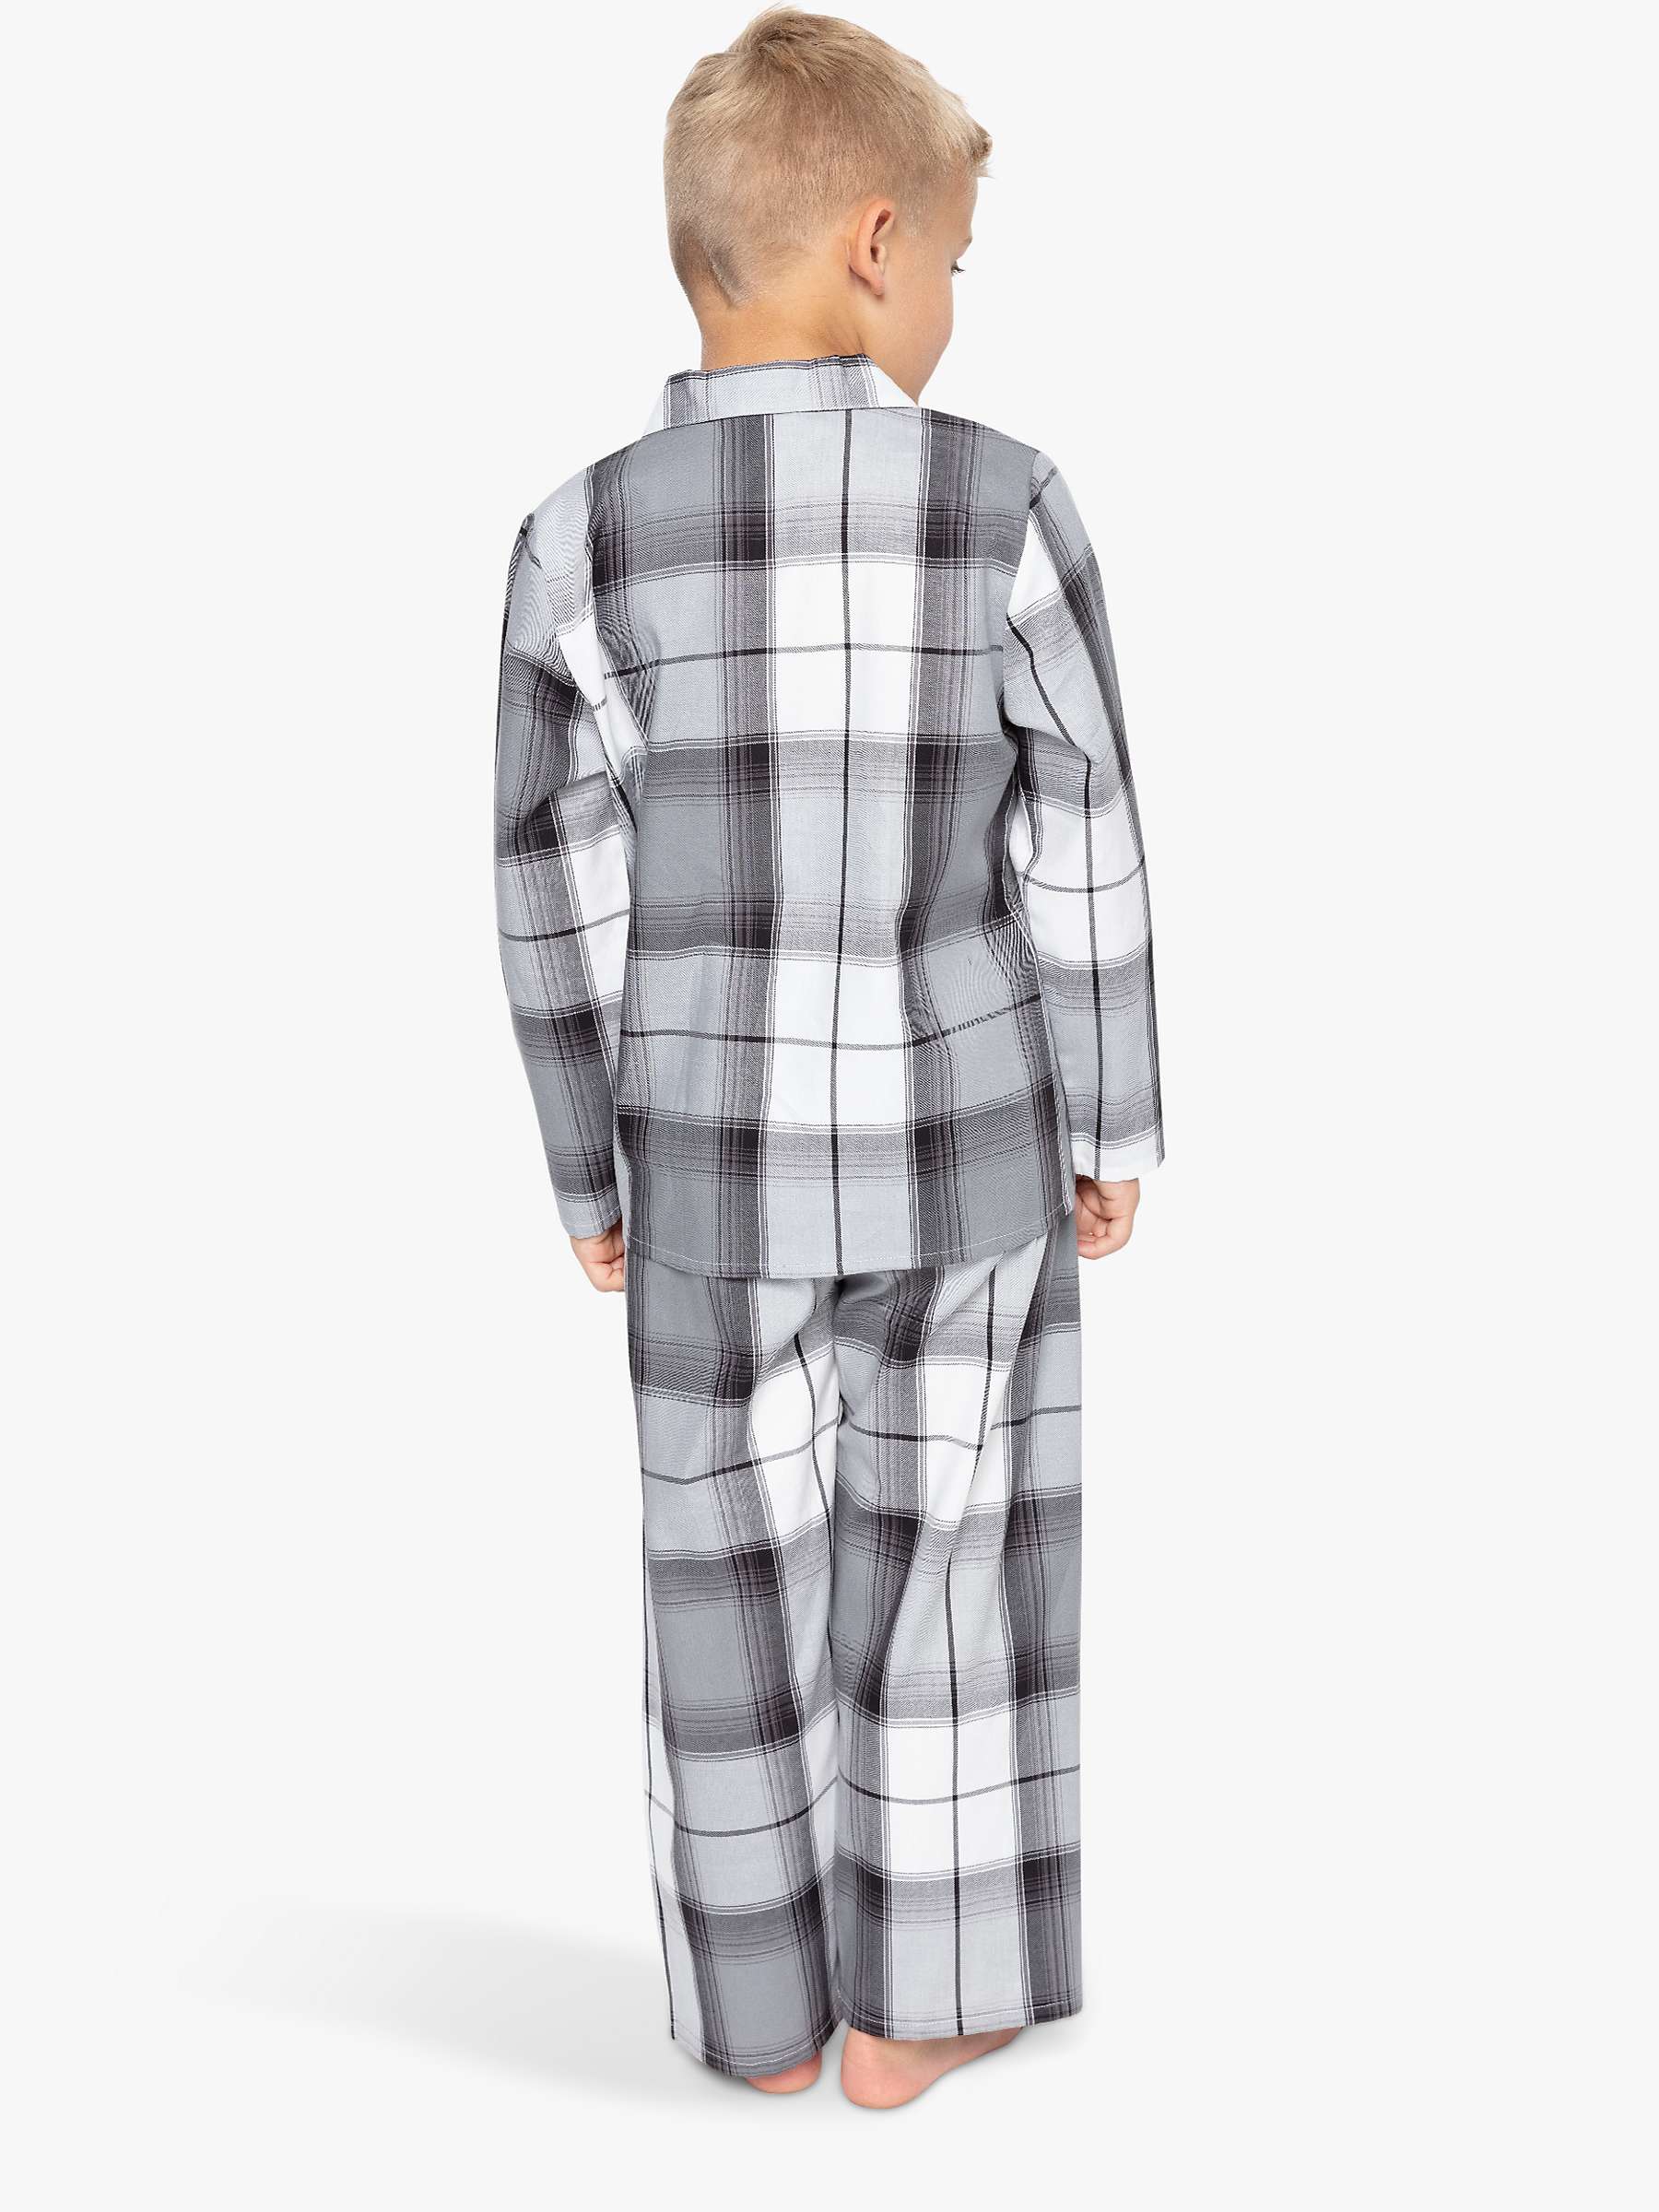 Buy Cyberjammies Kids' Samuel Check Print Pyjamas, Grey Online at johnlewis.com